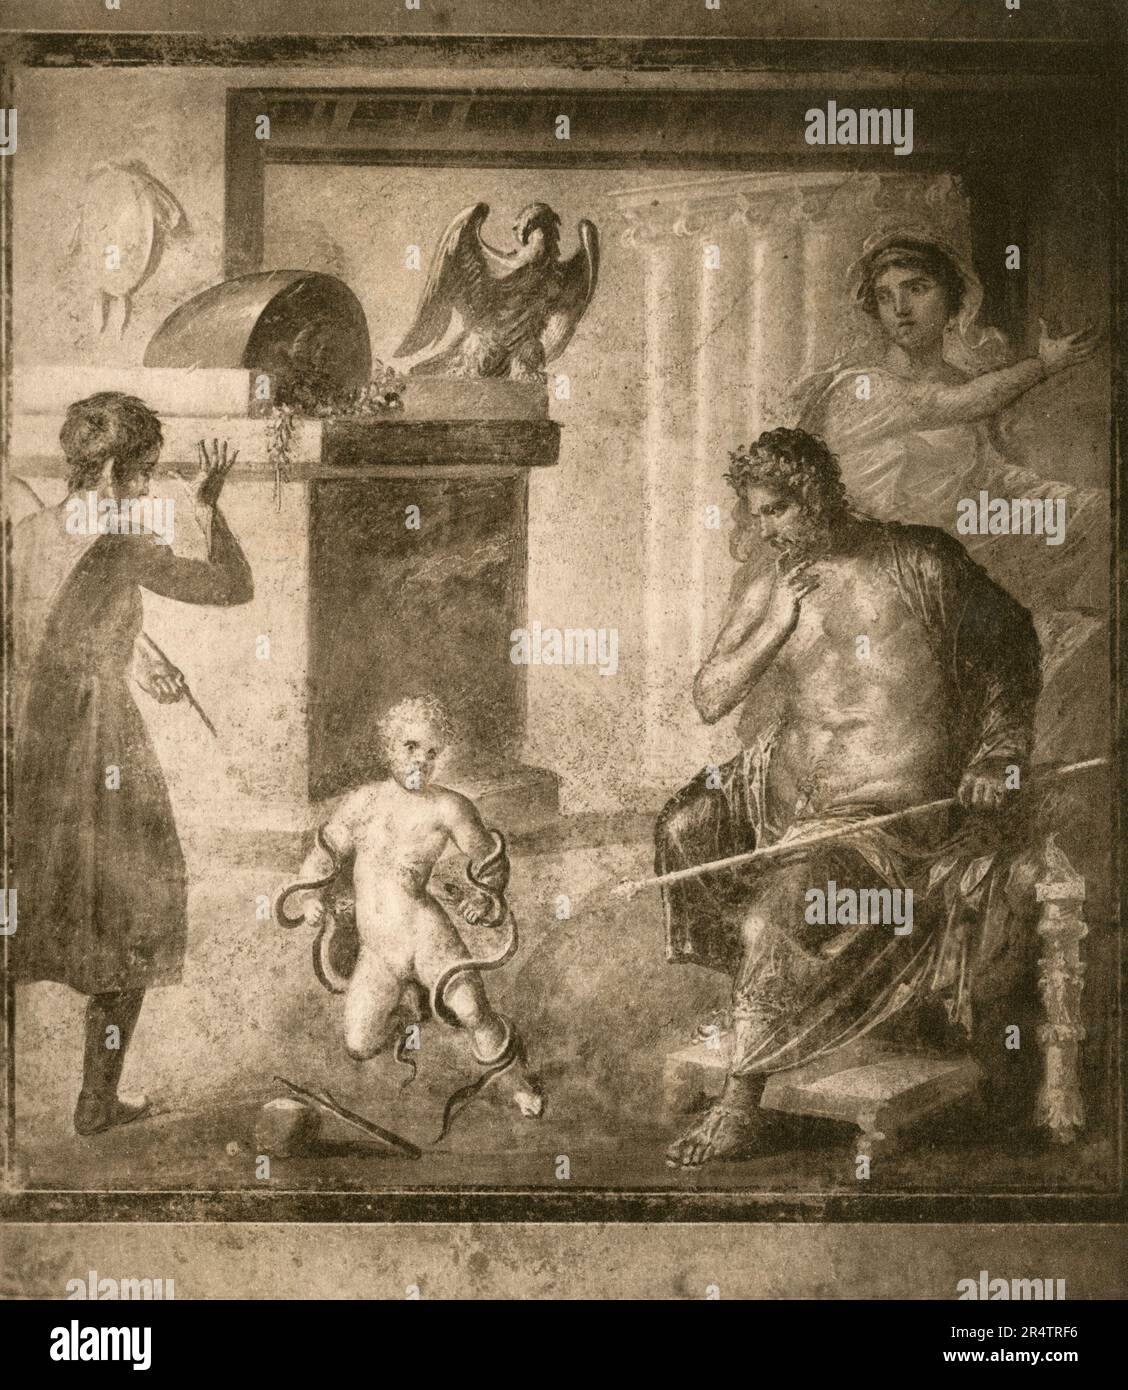 Mort de Penthée, fresque romaine ancienne, Pompéi, Italie, 1890s Banque D'Images